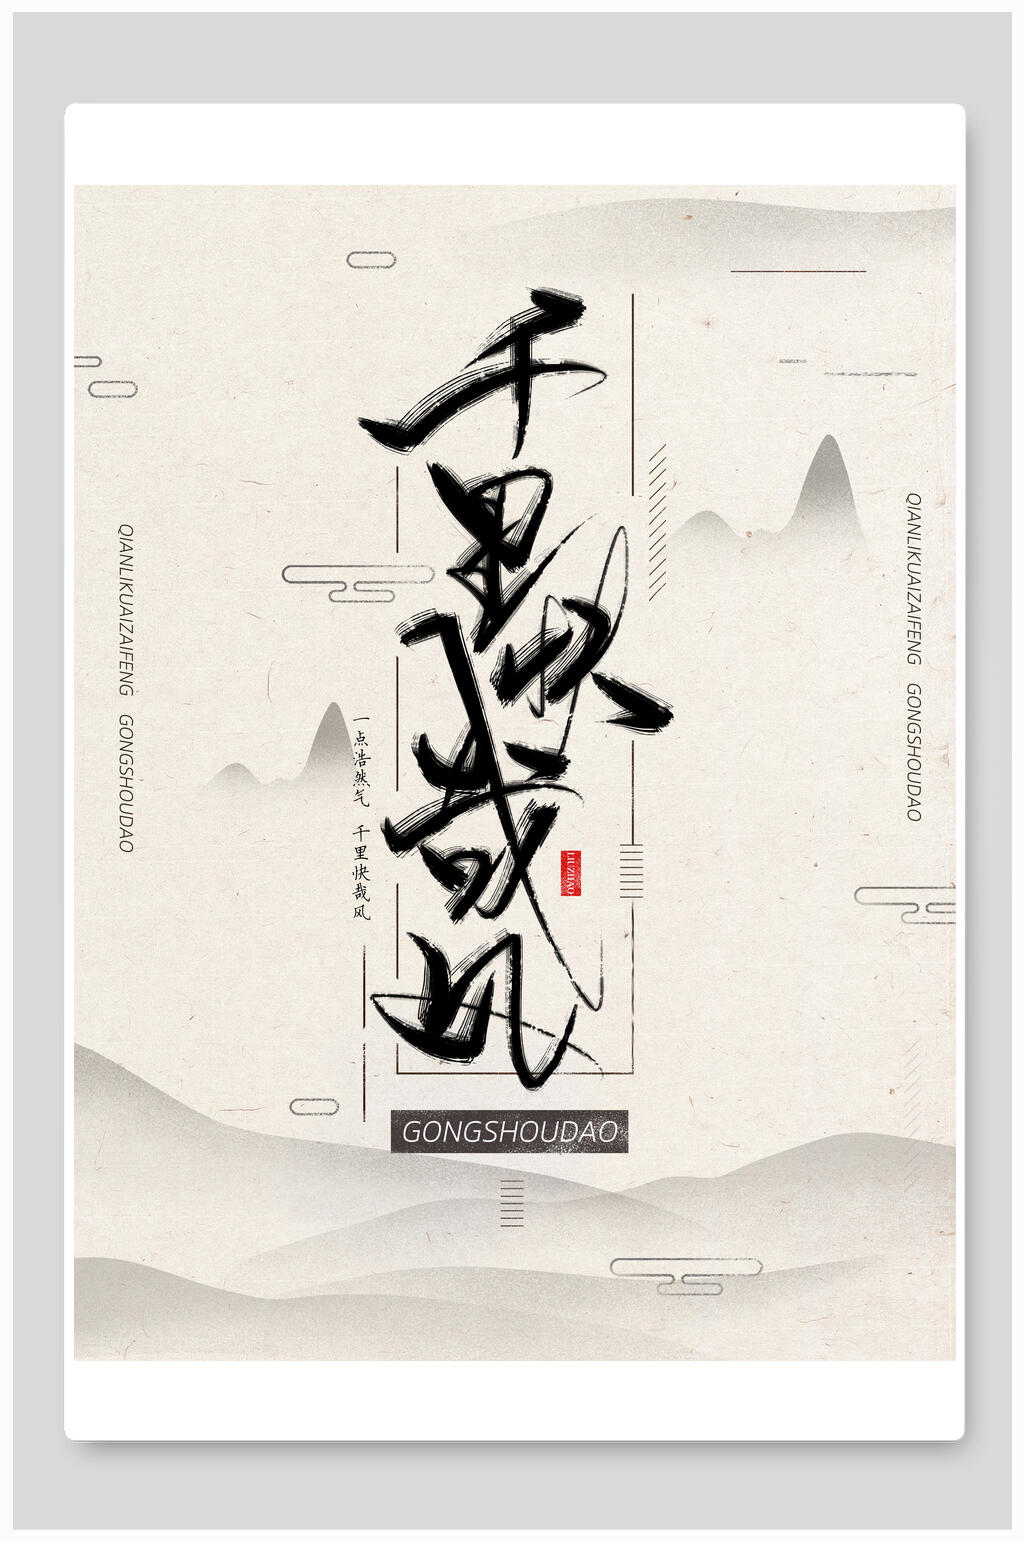 众图网独家提供古风禅意中国风海报素材免费下载,本作品是由inuyasha